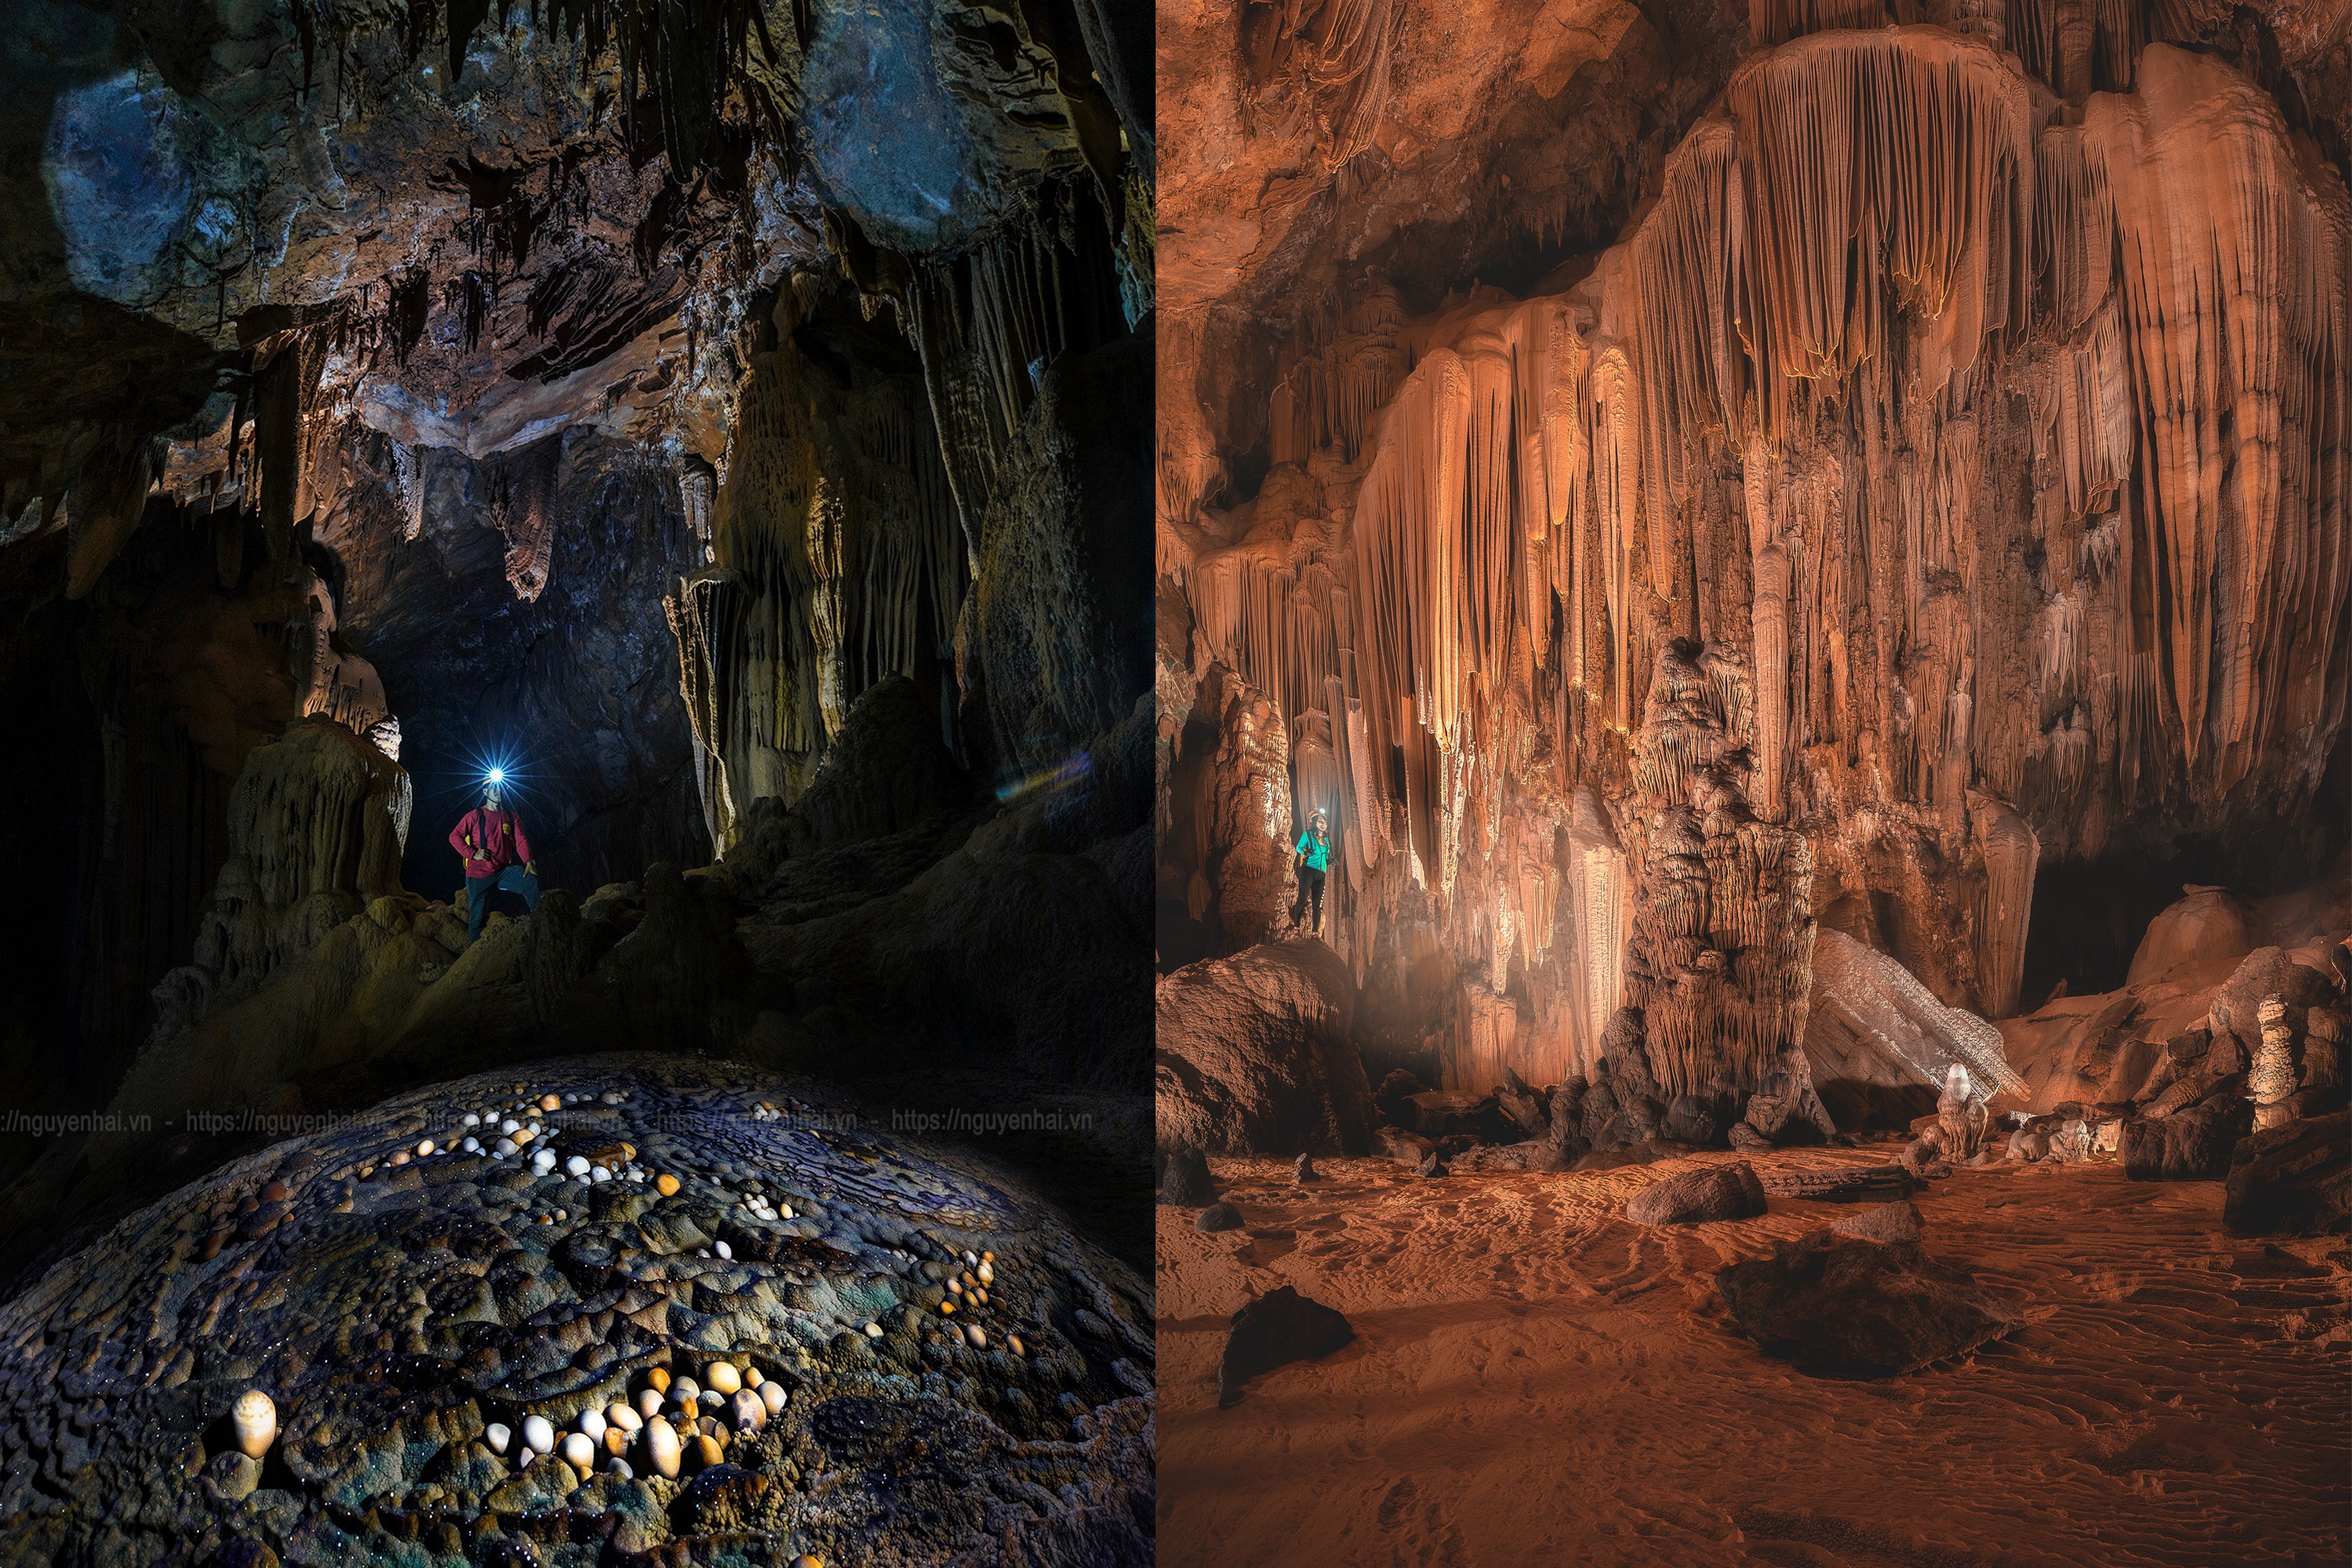 Vẻ đẹp siêu thực trong hang động có hồ nước bí ẩn treo lơ lửng - 11